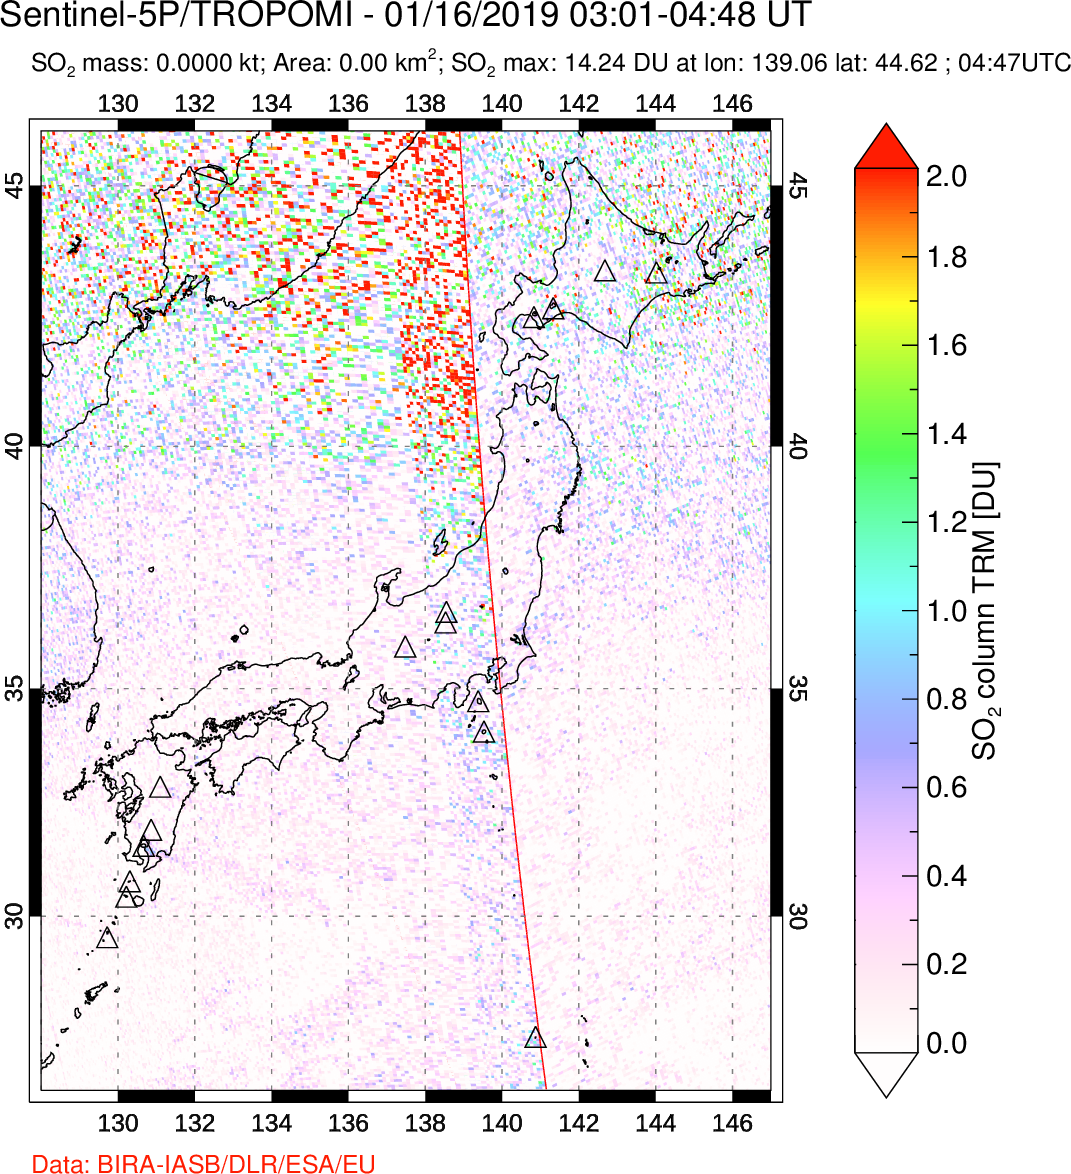 A sulfur dioxide image over Japan on Jan 16, 2019.